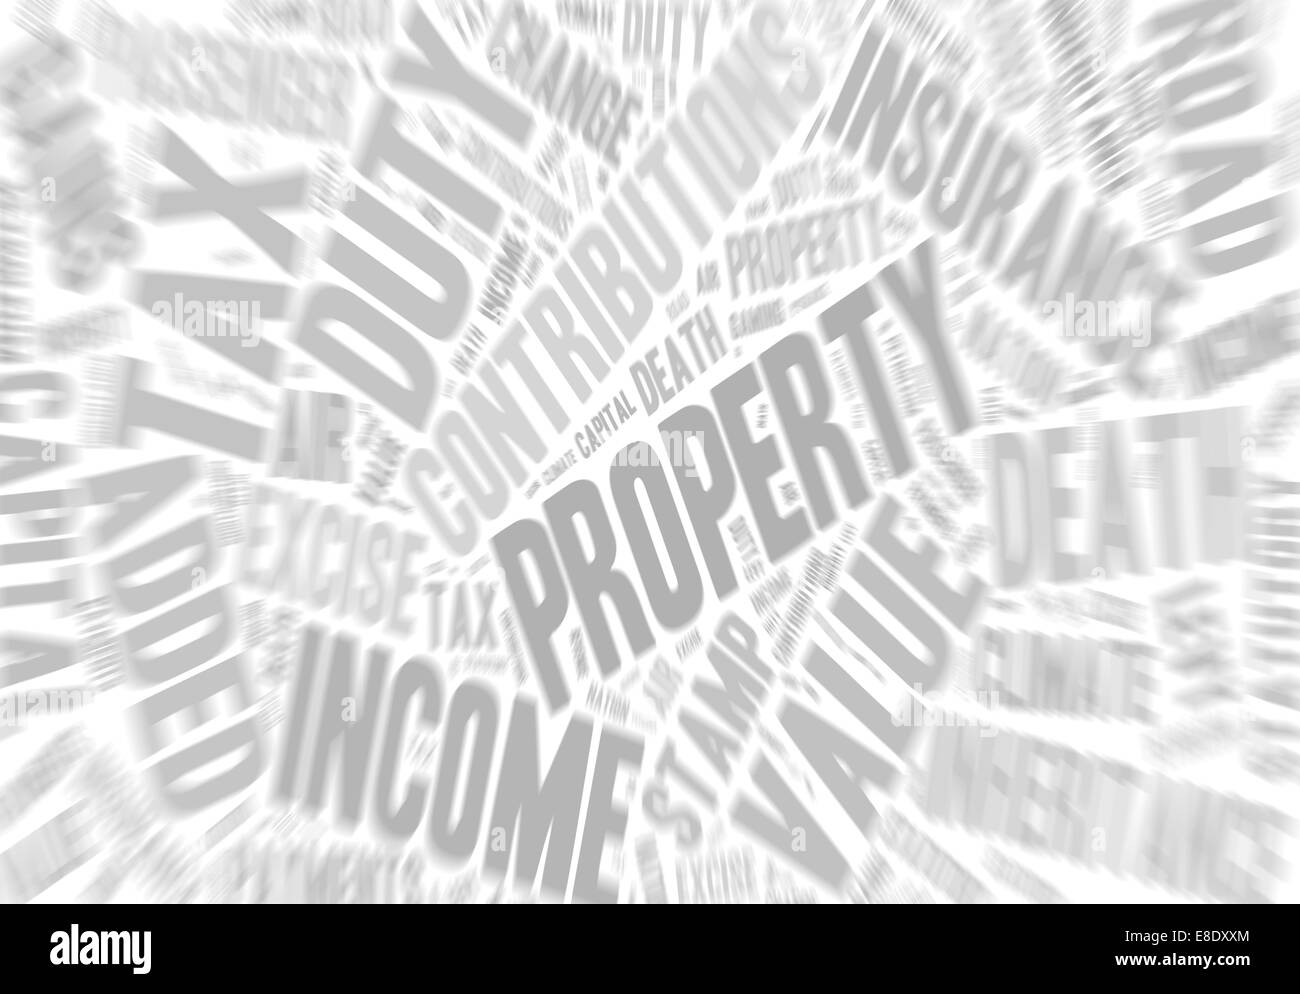 Raccolta di parole con riferimento alle imposte nel Regno Unito. L'aggiunta dell'effetto zoom. Foto Stock